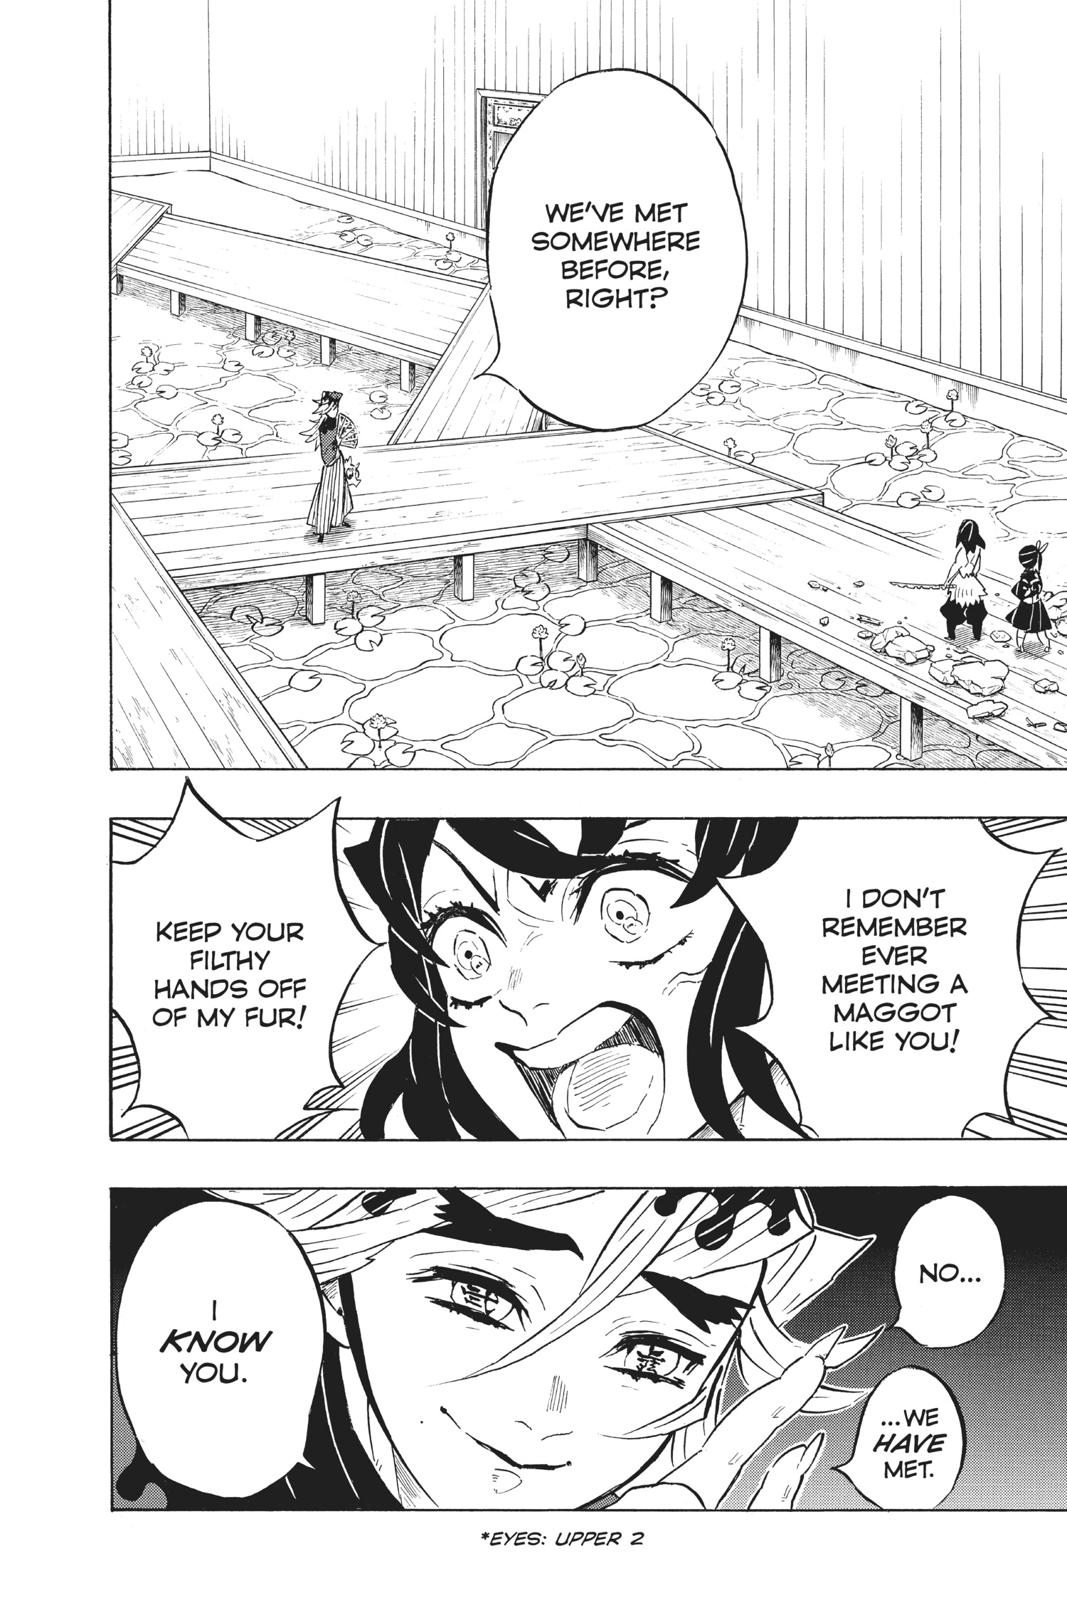 Demon Slayer Manga Manga Chapter - 160 - image 2